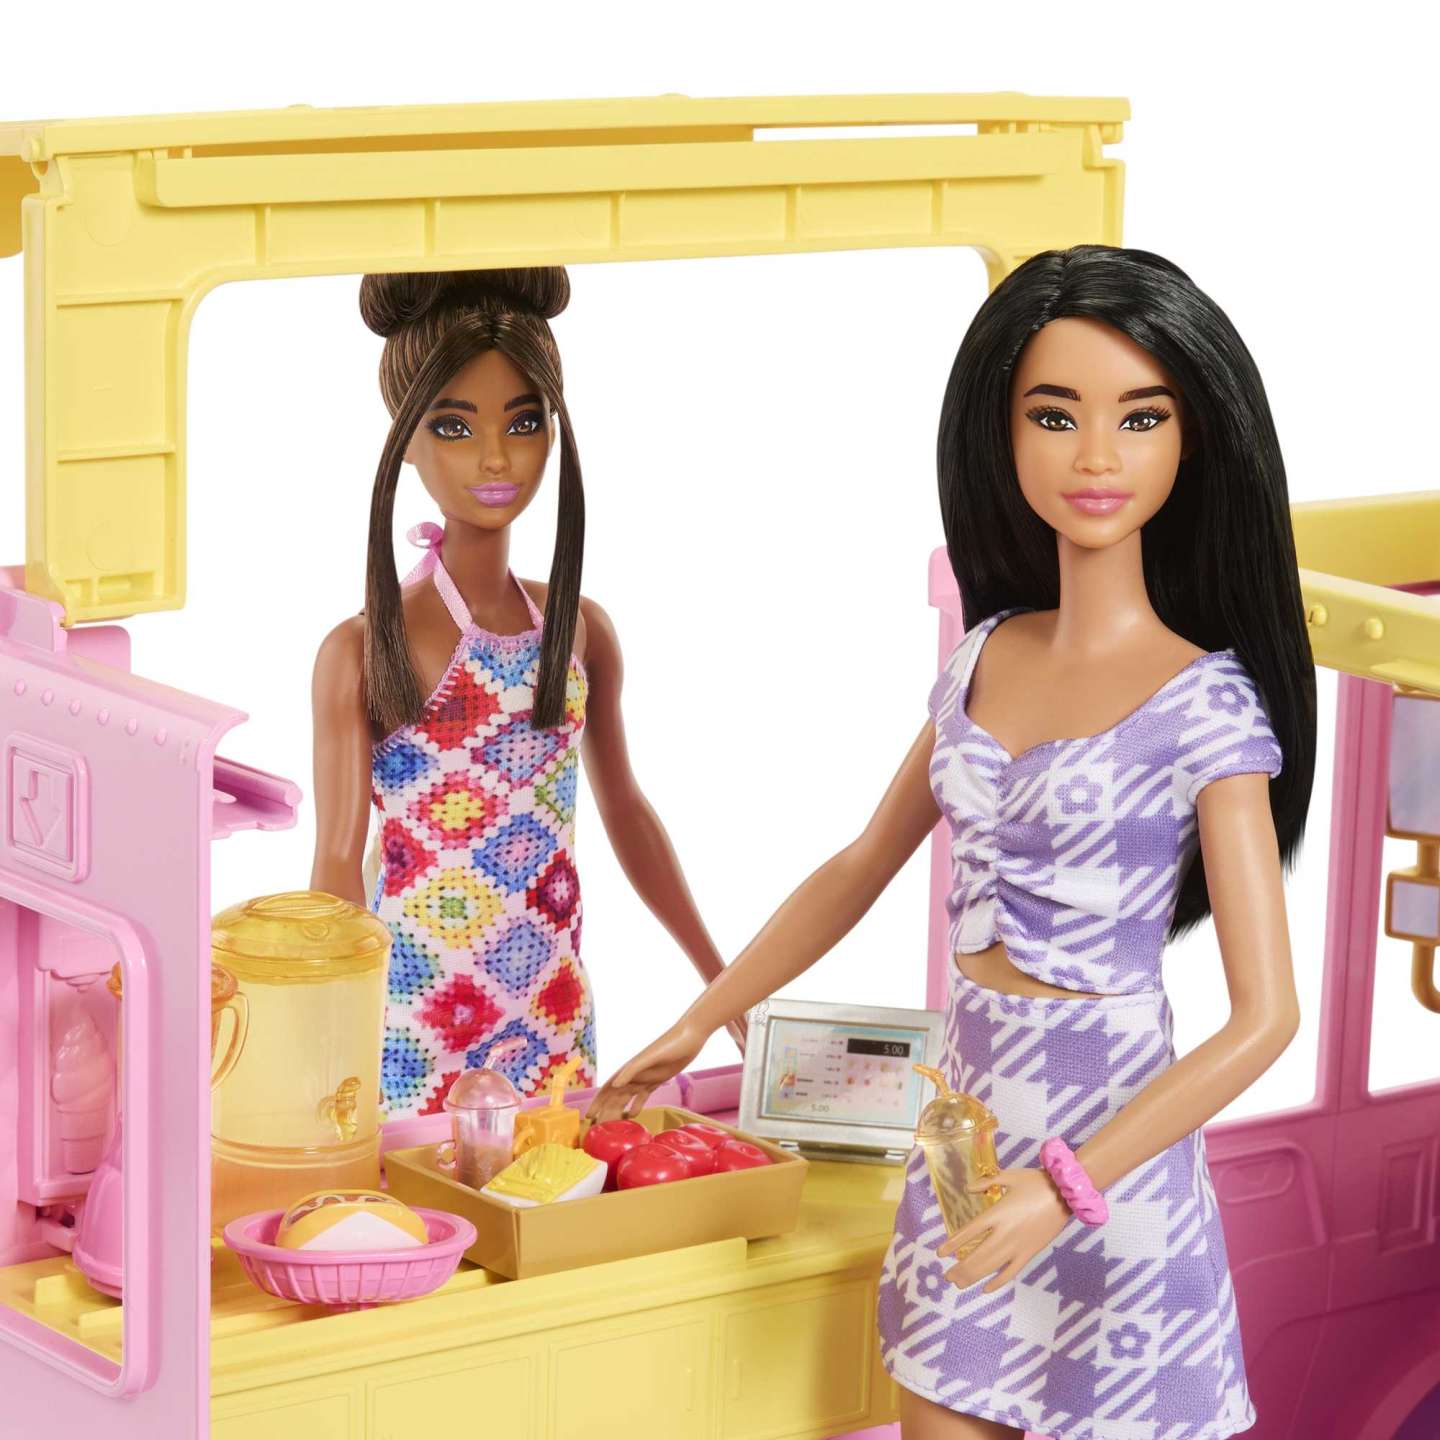 Barbie - Lemonade Truck Playset